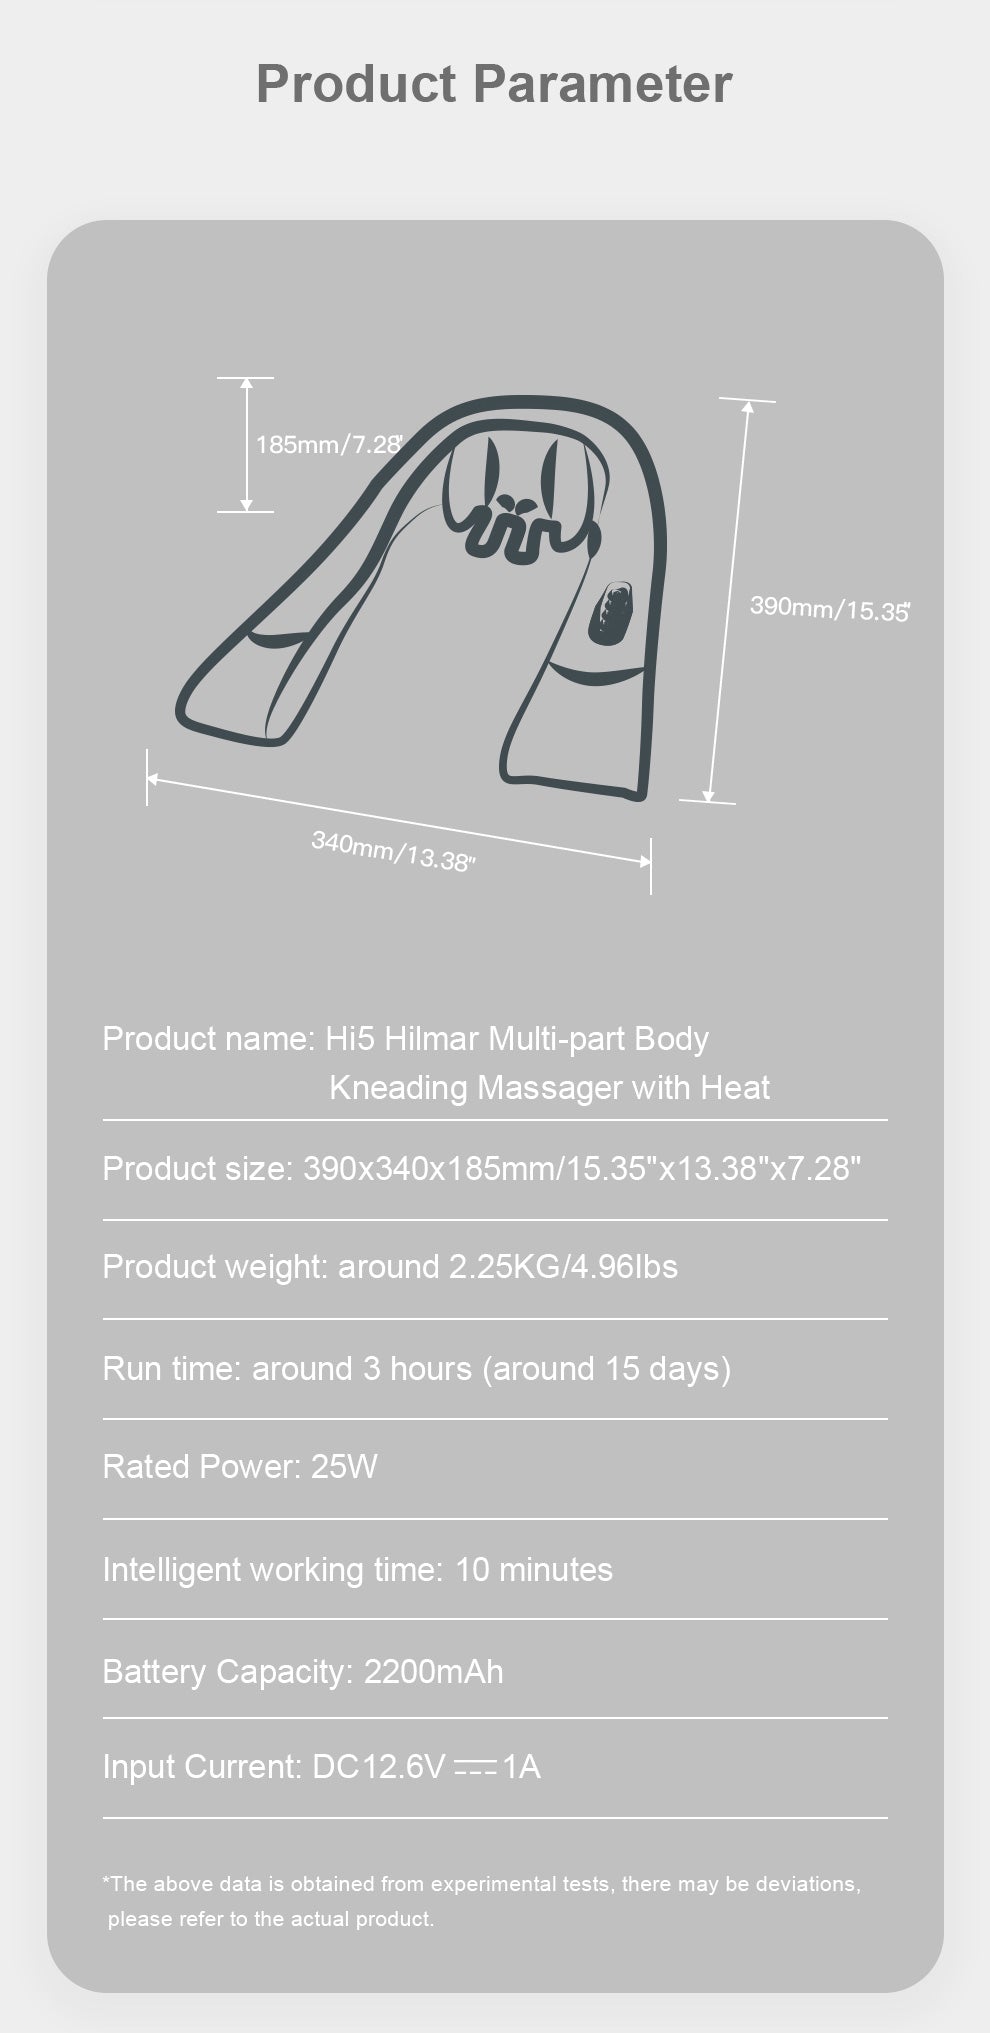 Hi5 Hilmar is a multi-body massage device